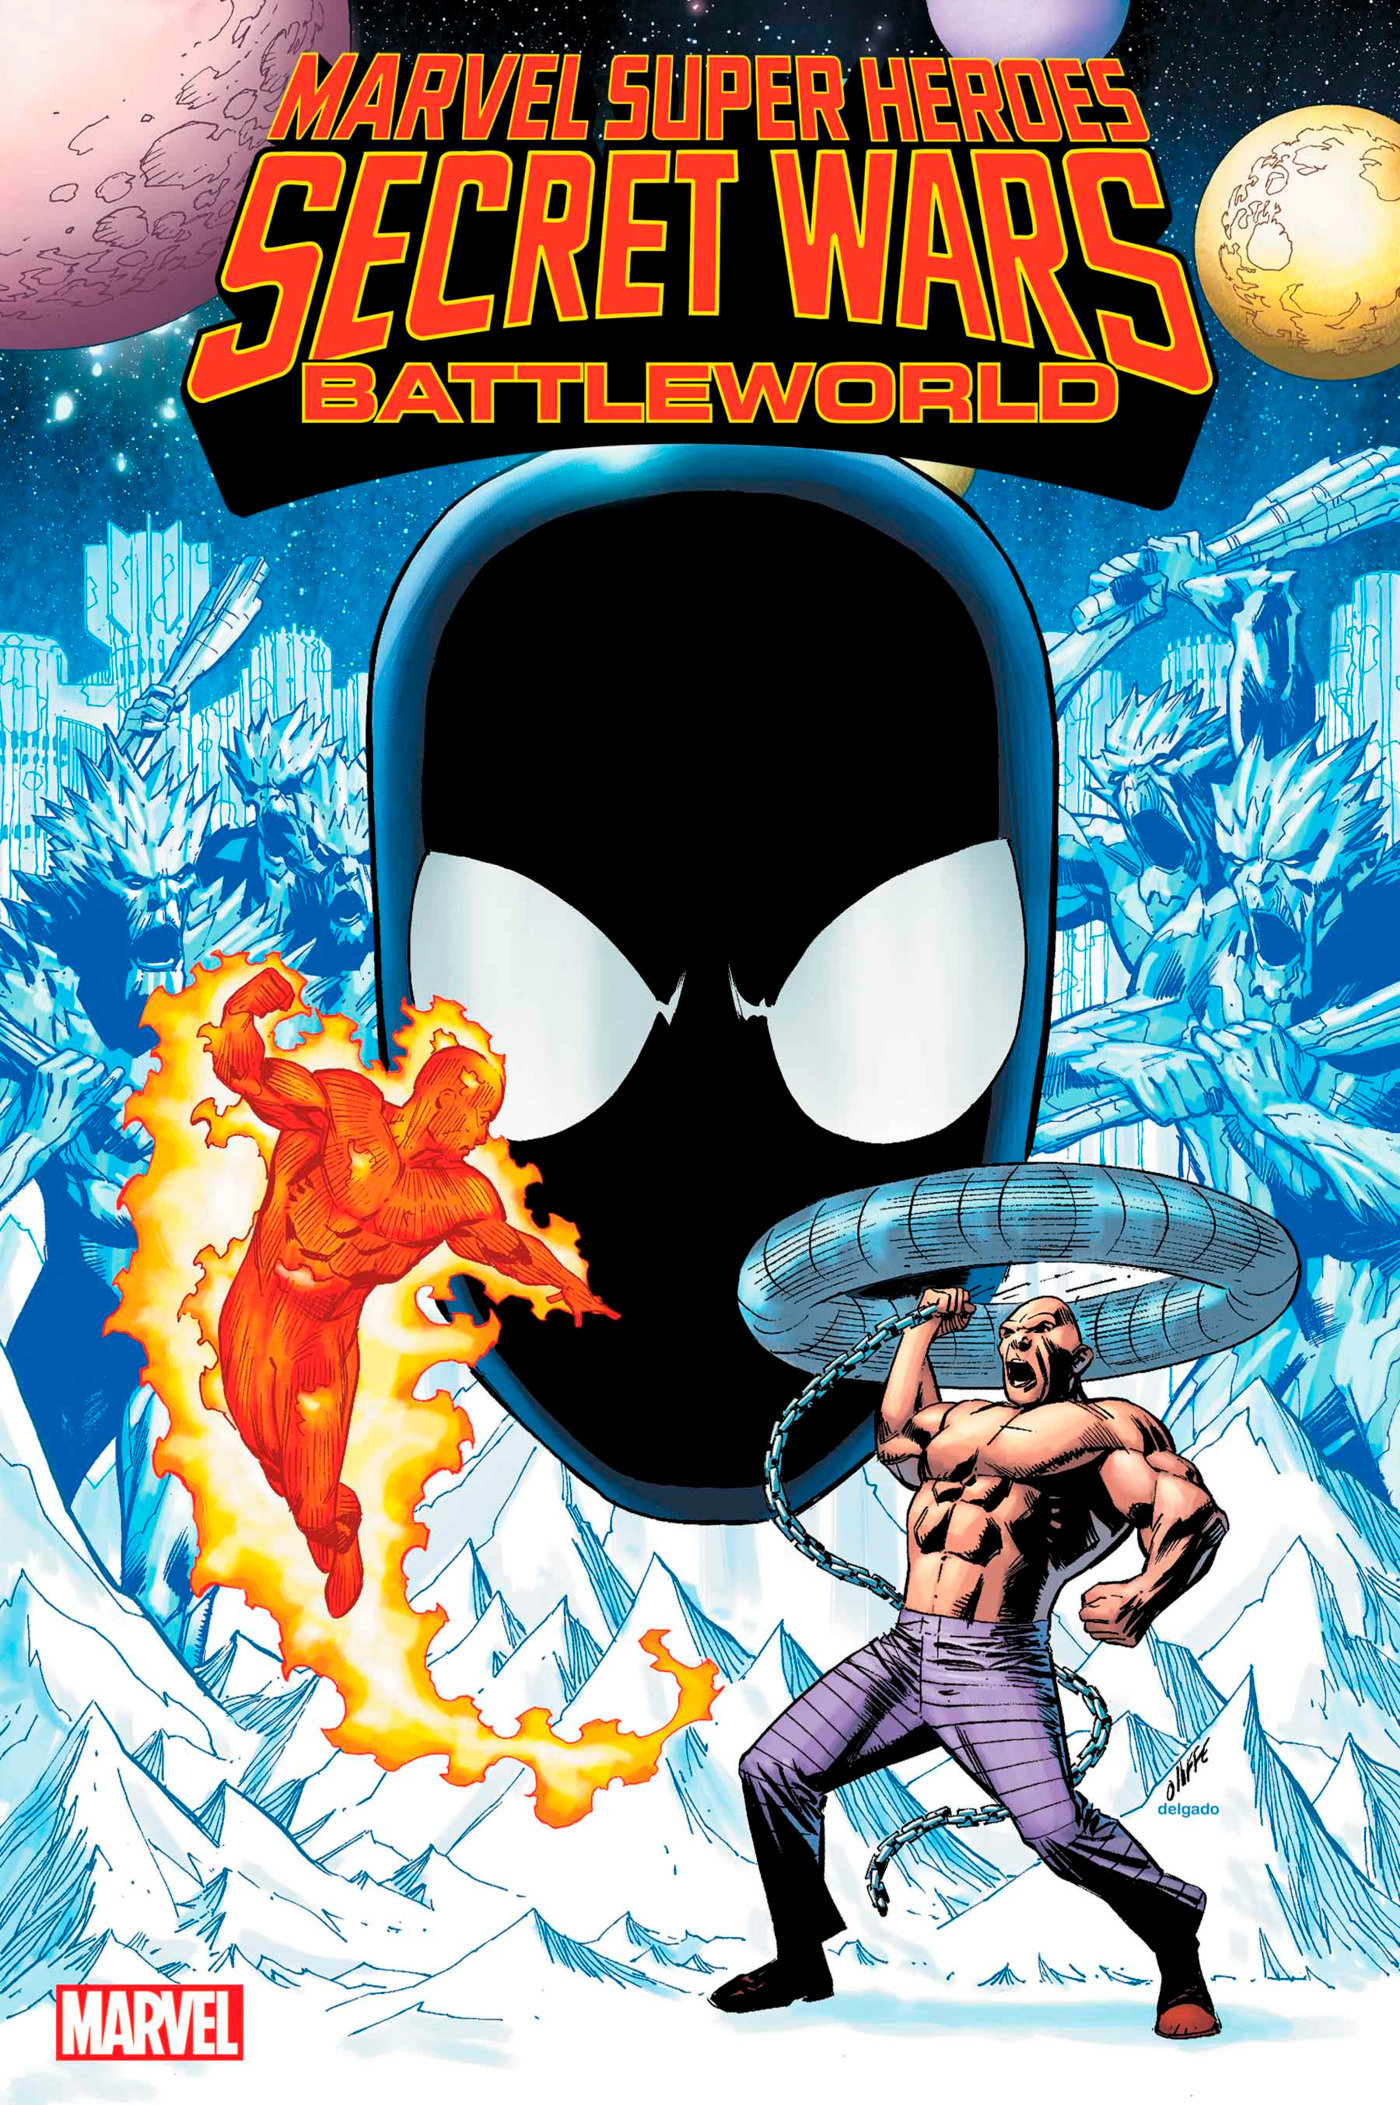 Marvel Super Heroes Secret Wars Battleworld #1 Pat Olliffe Variant